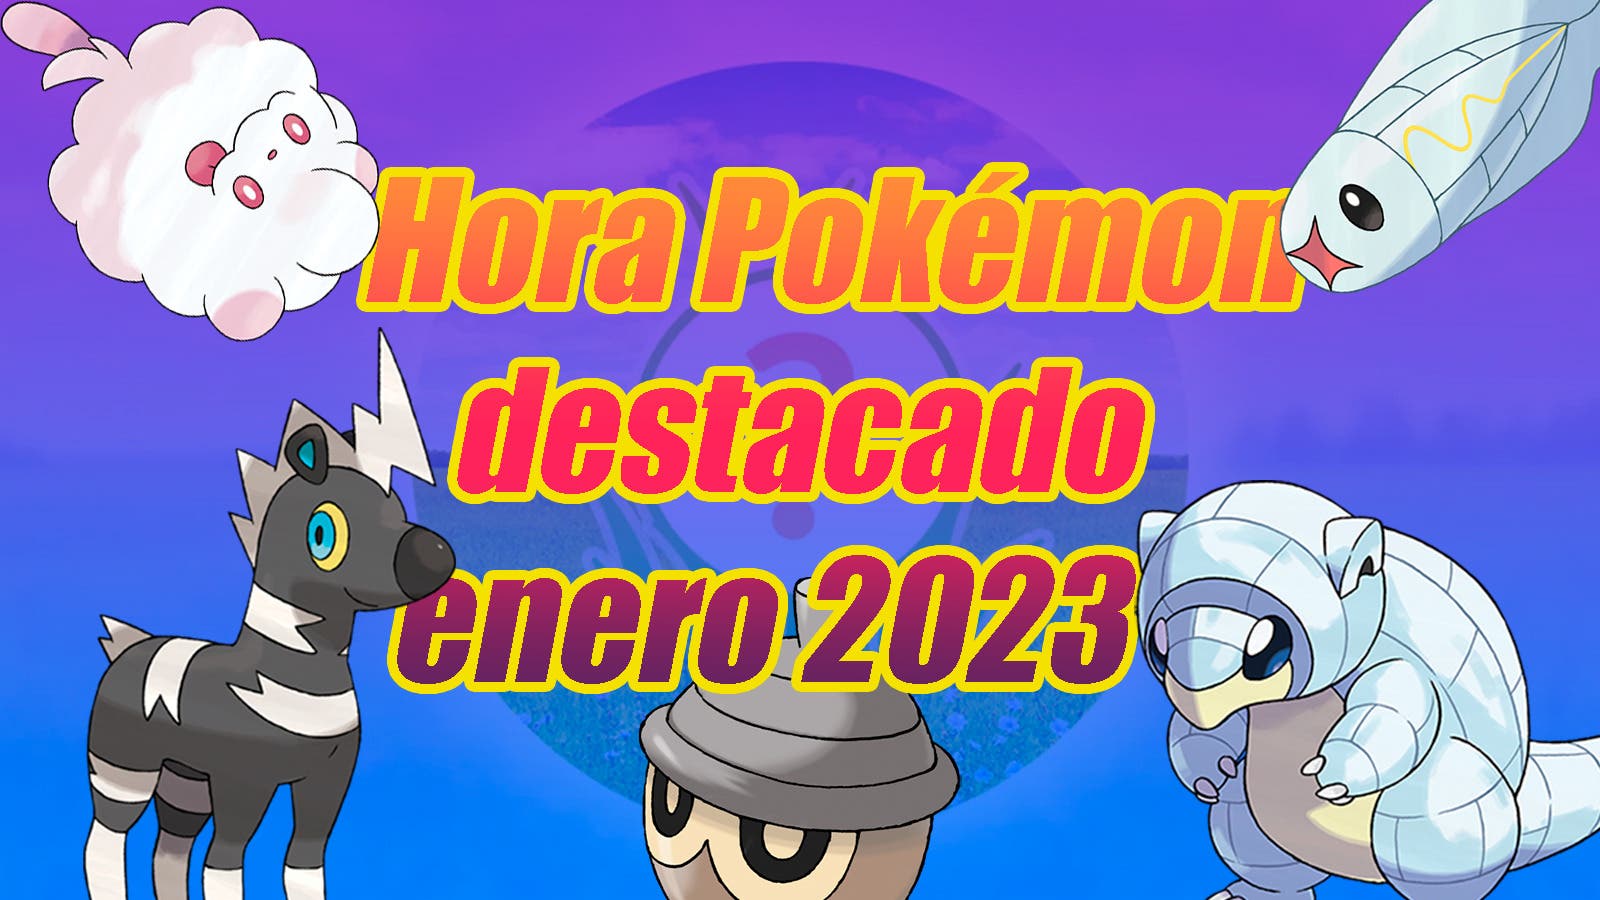 Hora em destaque Pokémon GO janeiro de 2023: tudo sobre eventos que você  não pode perder - Millenium